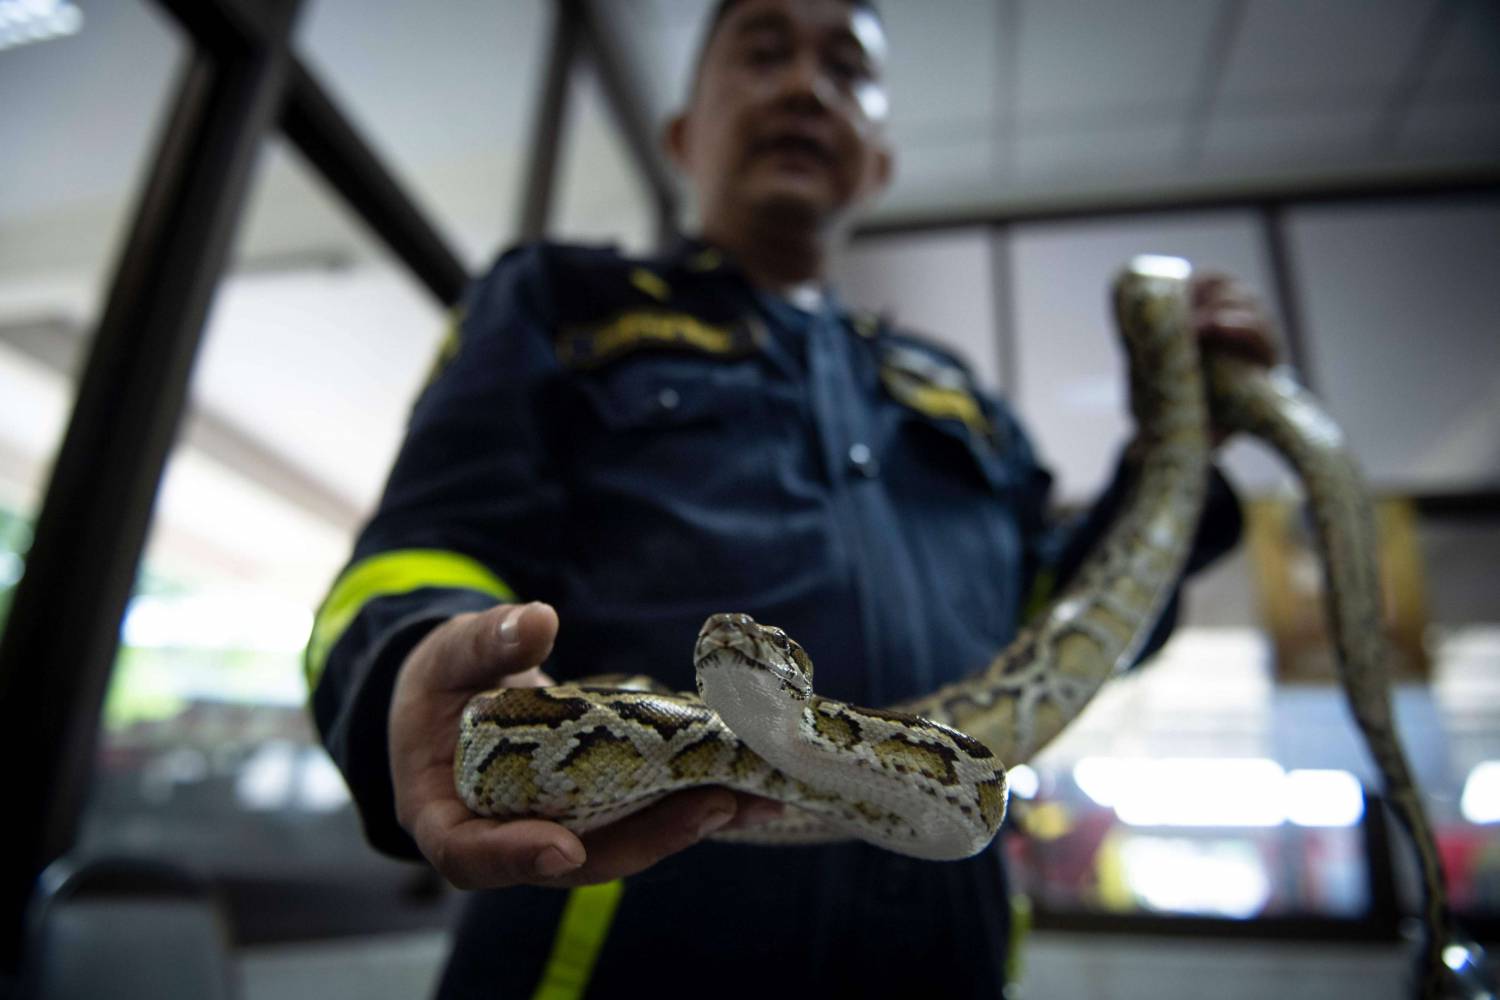 اصطياد الثعابين السامة في بانكوك أكبر وأخطر مهام رجال الإطفاء